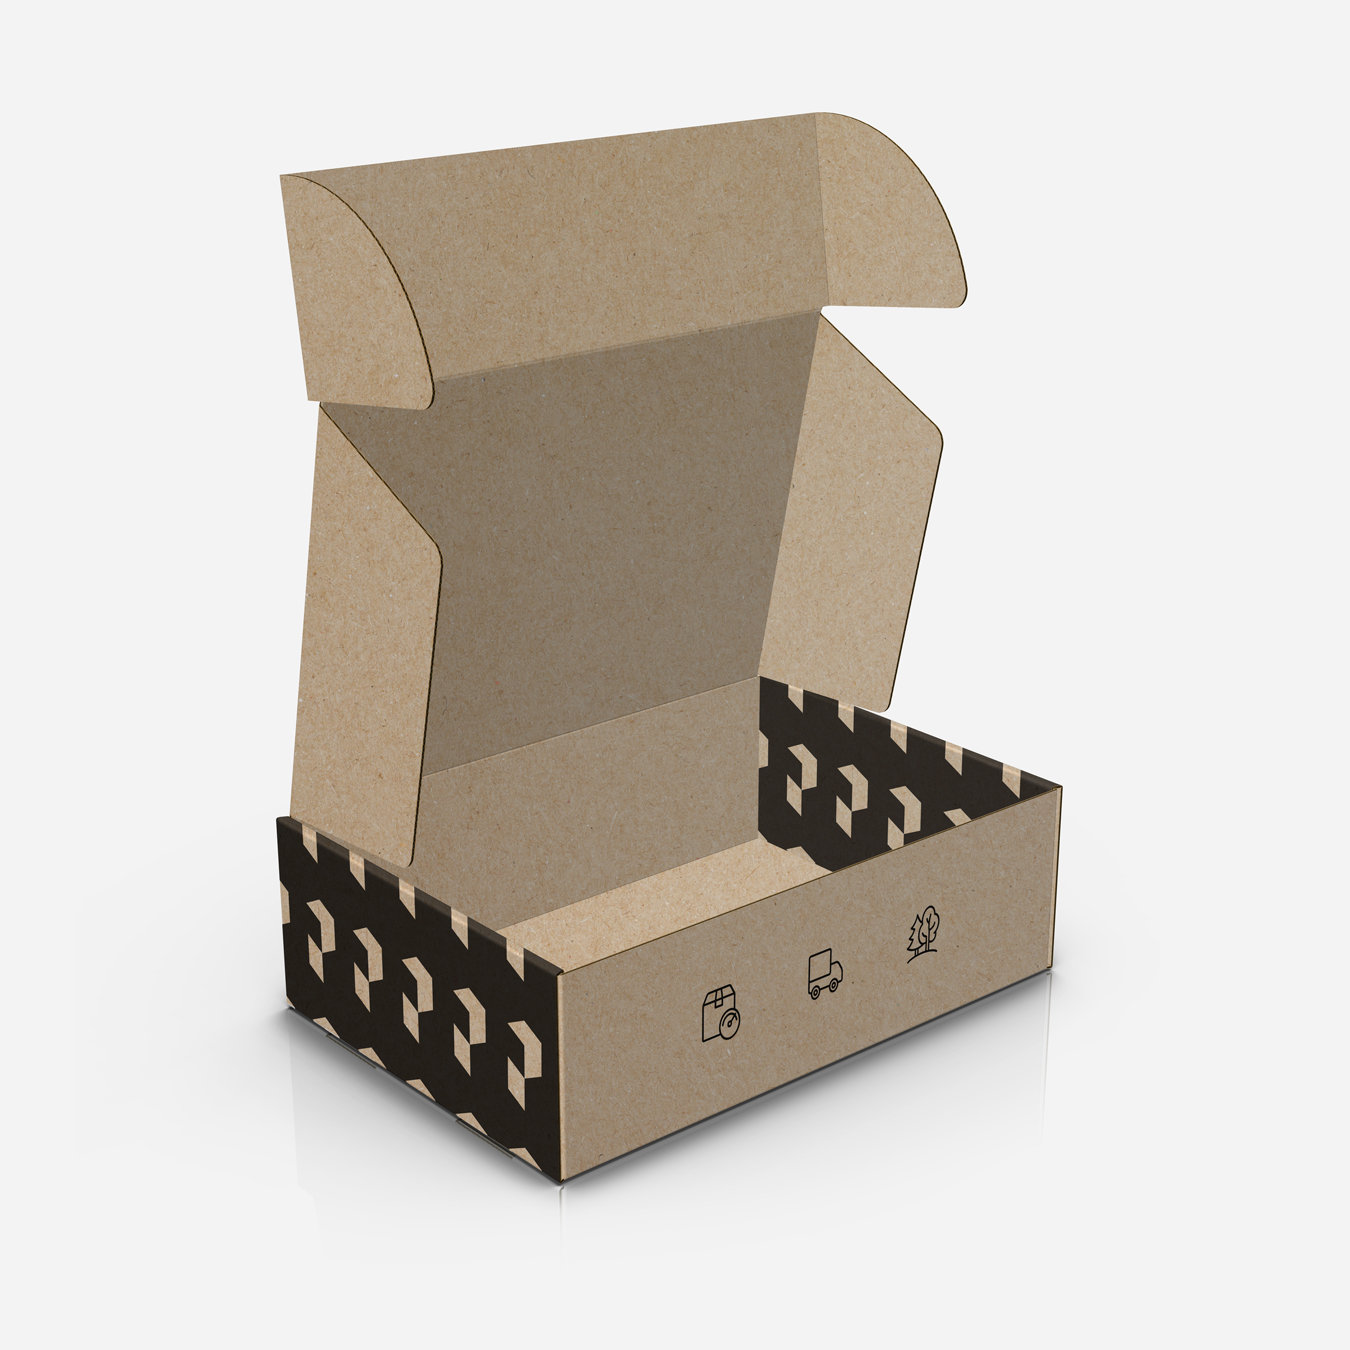 Pudełko fasonowe z nadrukiem czarnym – ekologiczne opakowanie do wysyłki z własnym nadrukiem.